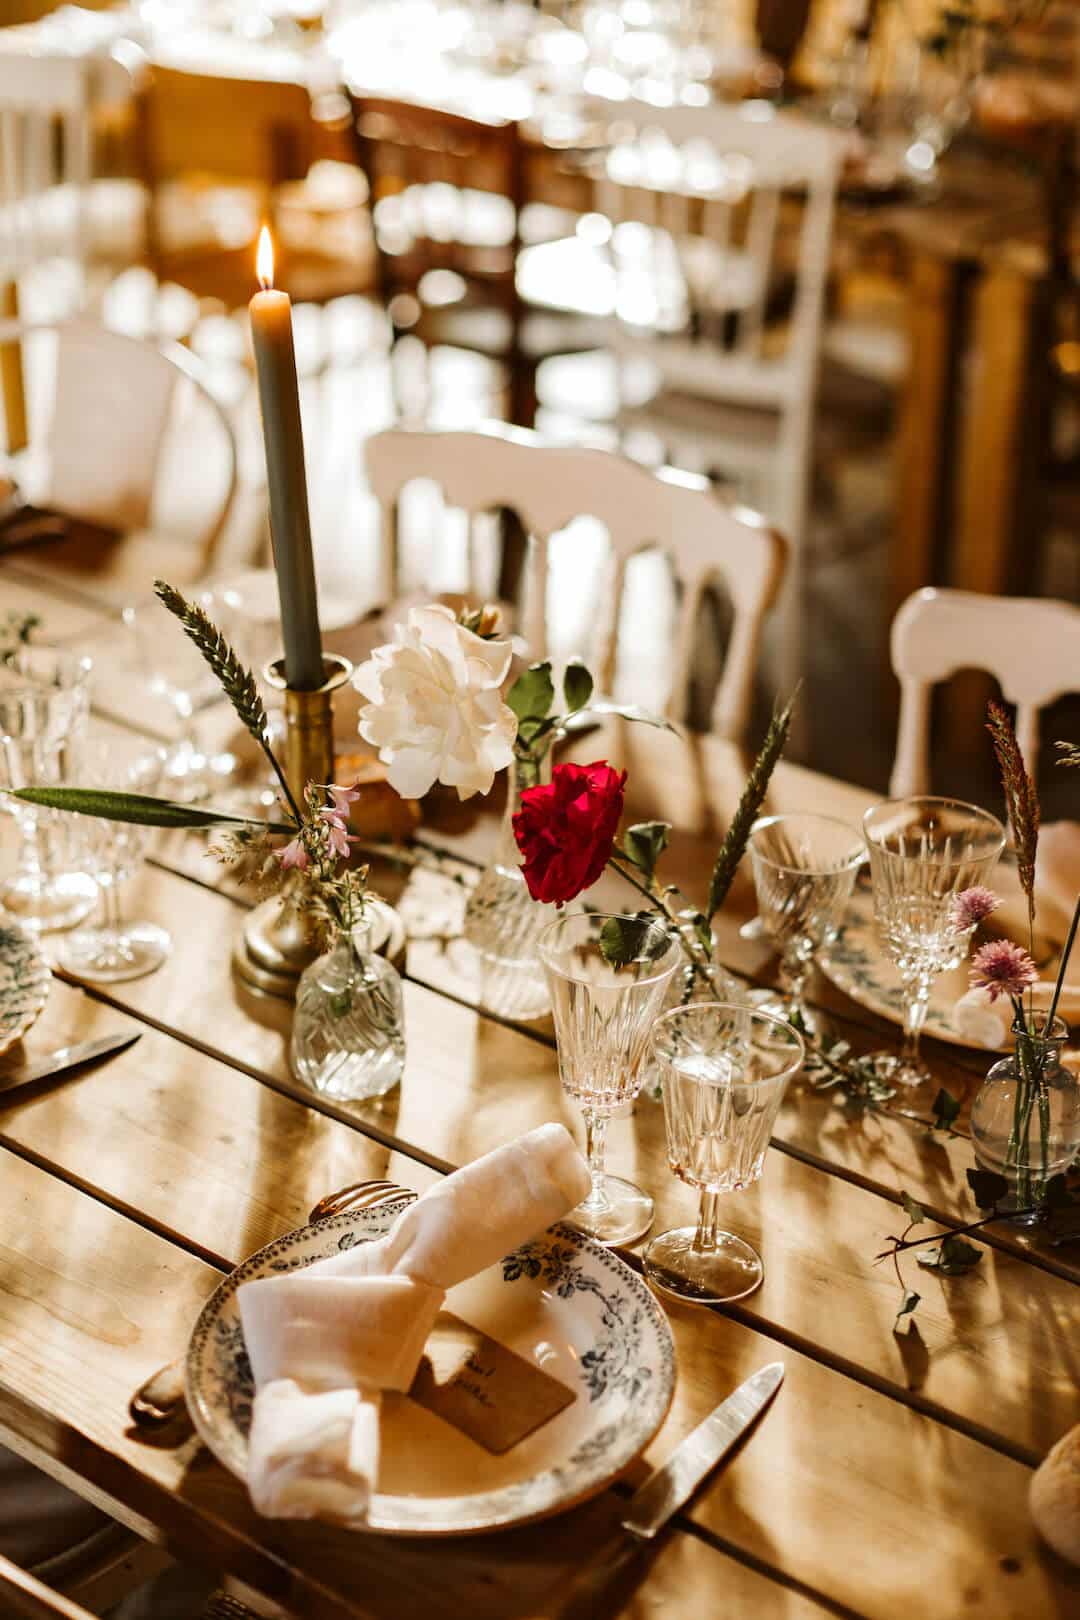 couvert decoration art de la table - repas mariage champetre chic amboise